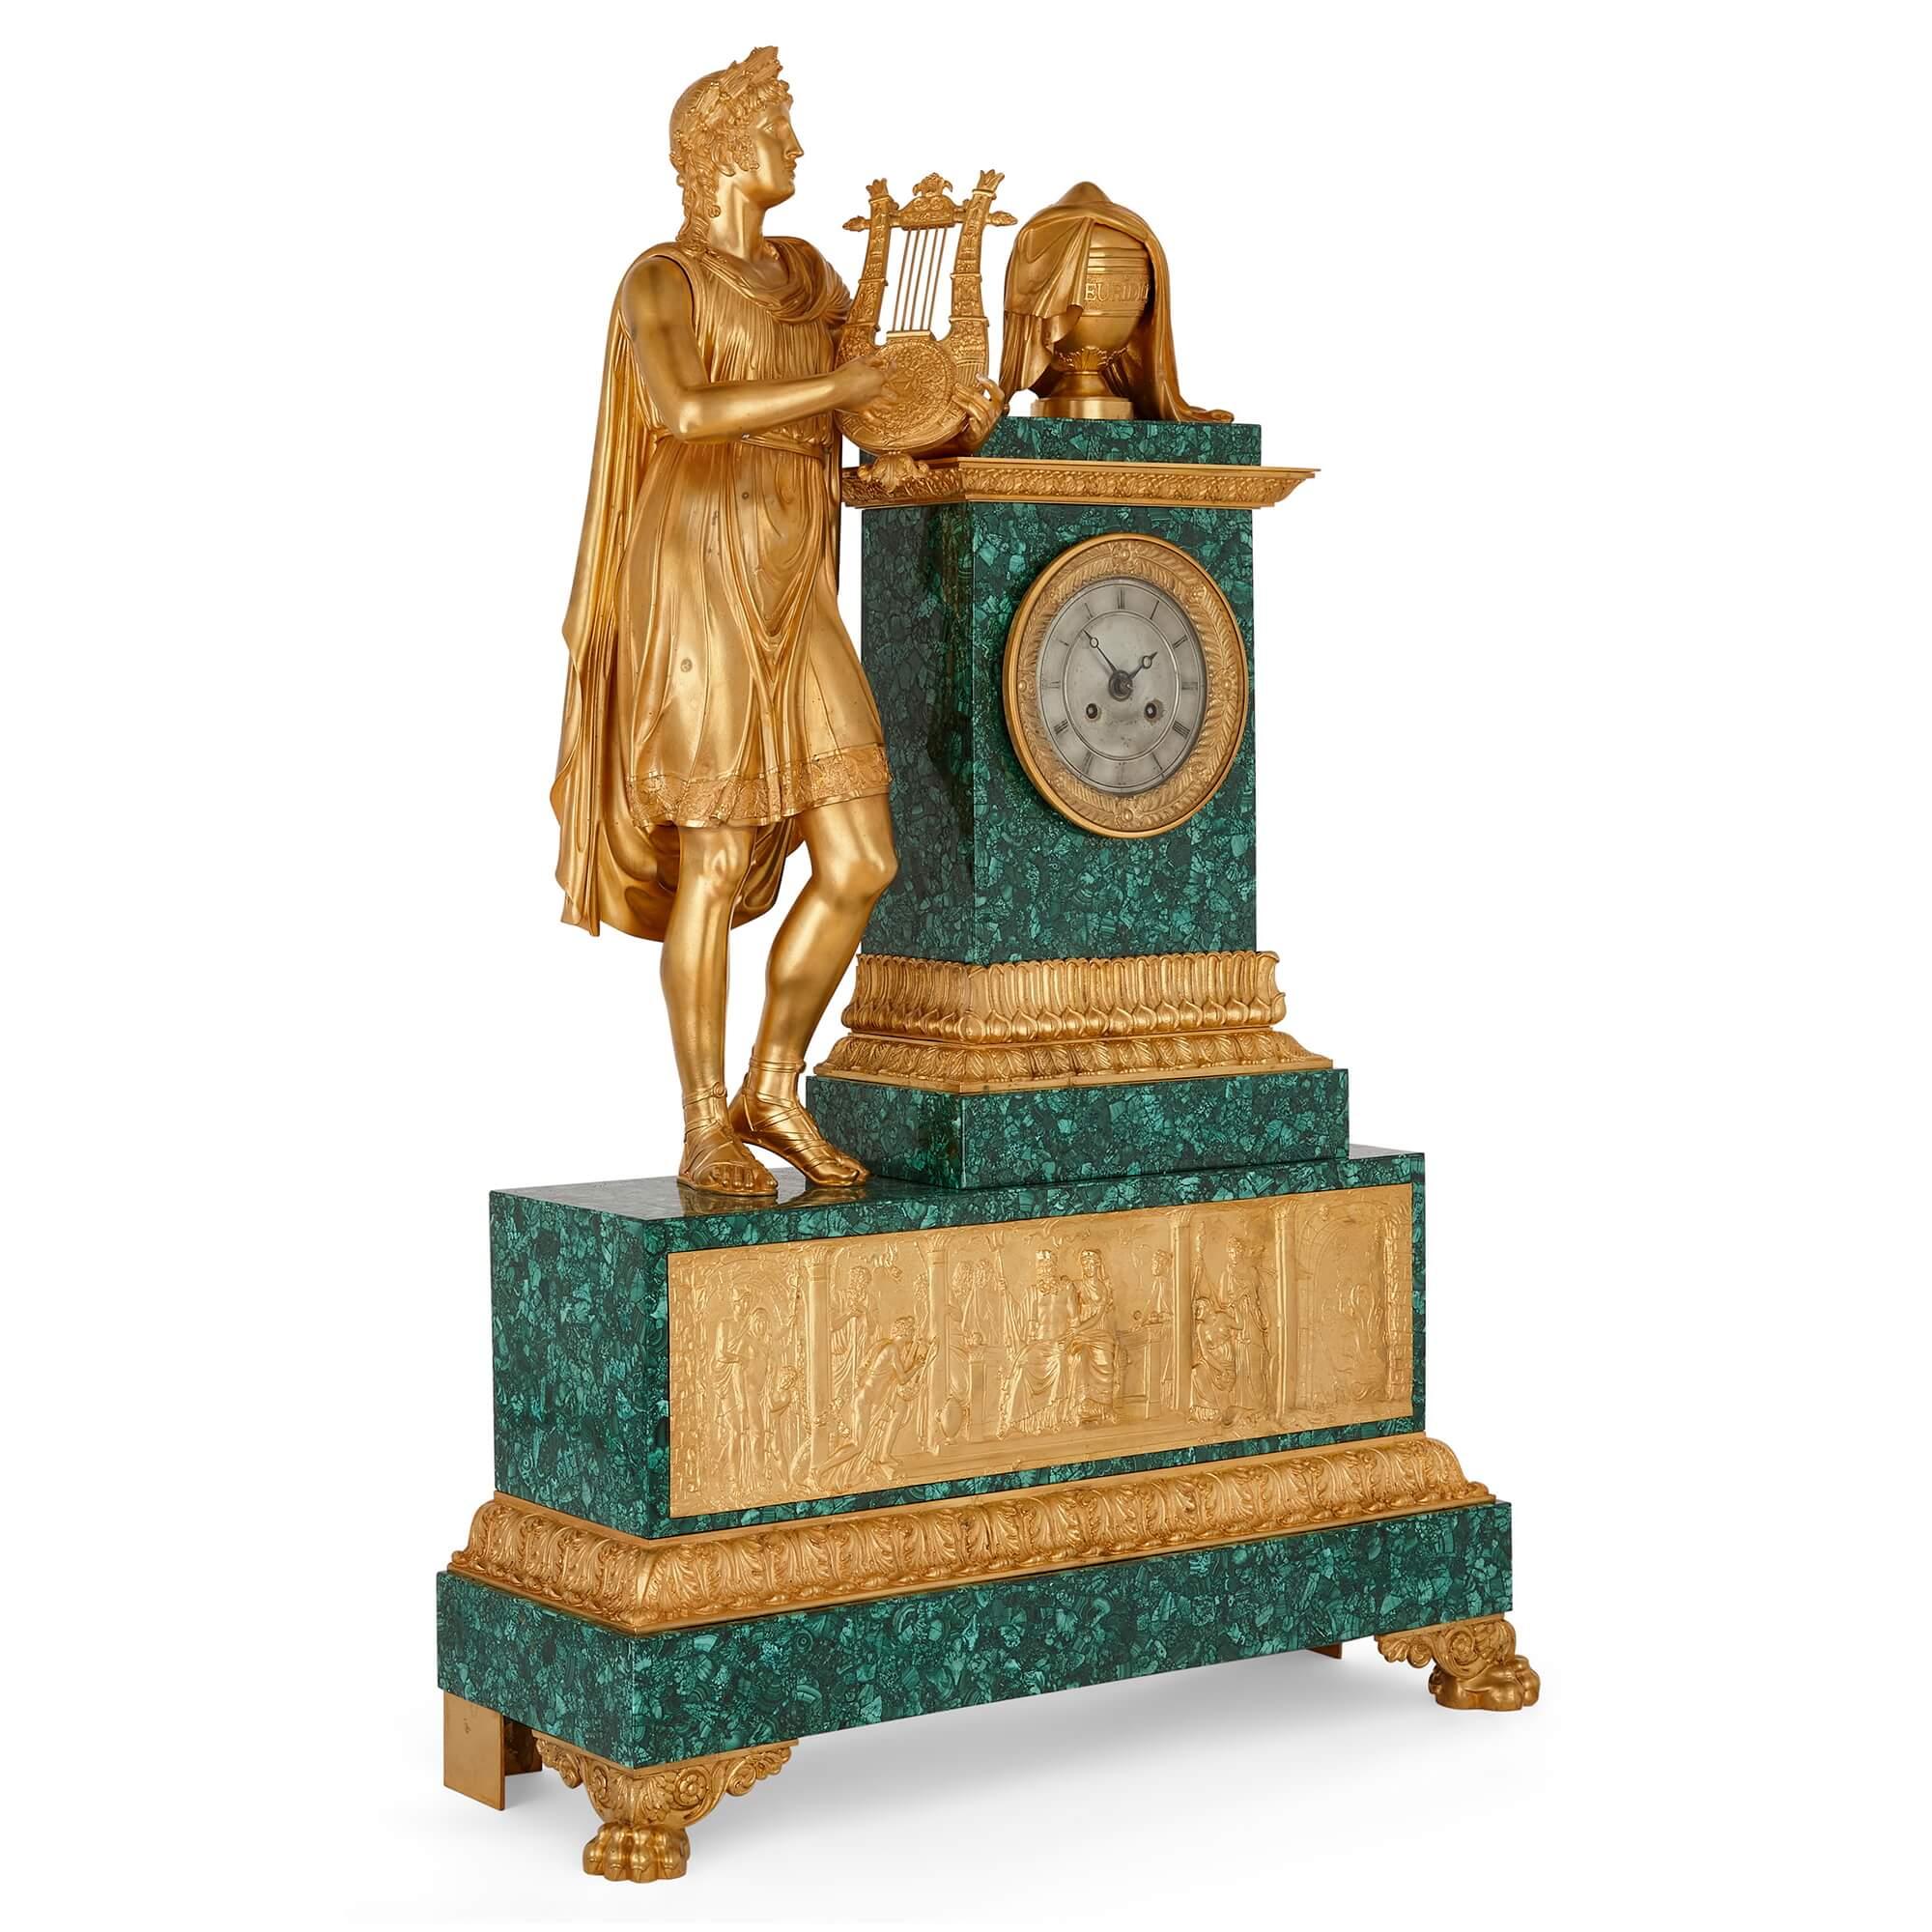 Impressionnante pendule de cheminée sculptée en bronze doré et malachite de la période Empire français.
Français, vers 1825.
Hauteur 92cm, largeur 63cm, profondeur 22cm

Fabriquée par Jacquier à Paris, vers 1825, cette magnifique horloge ancienne,